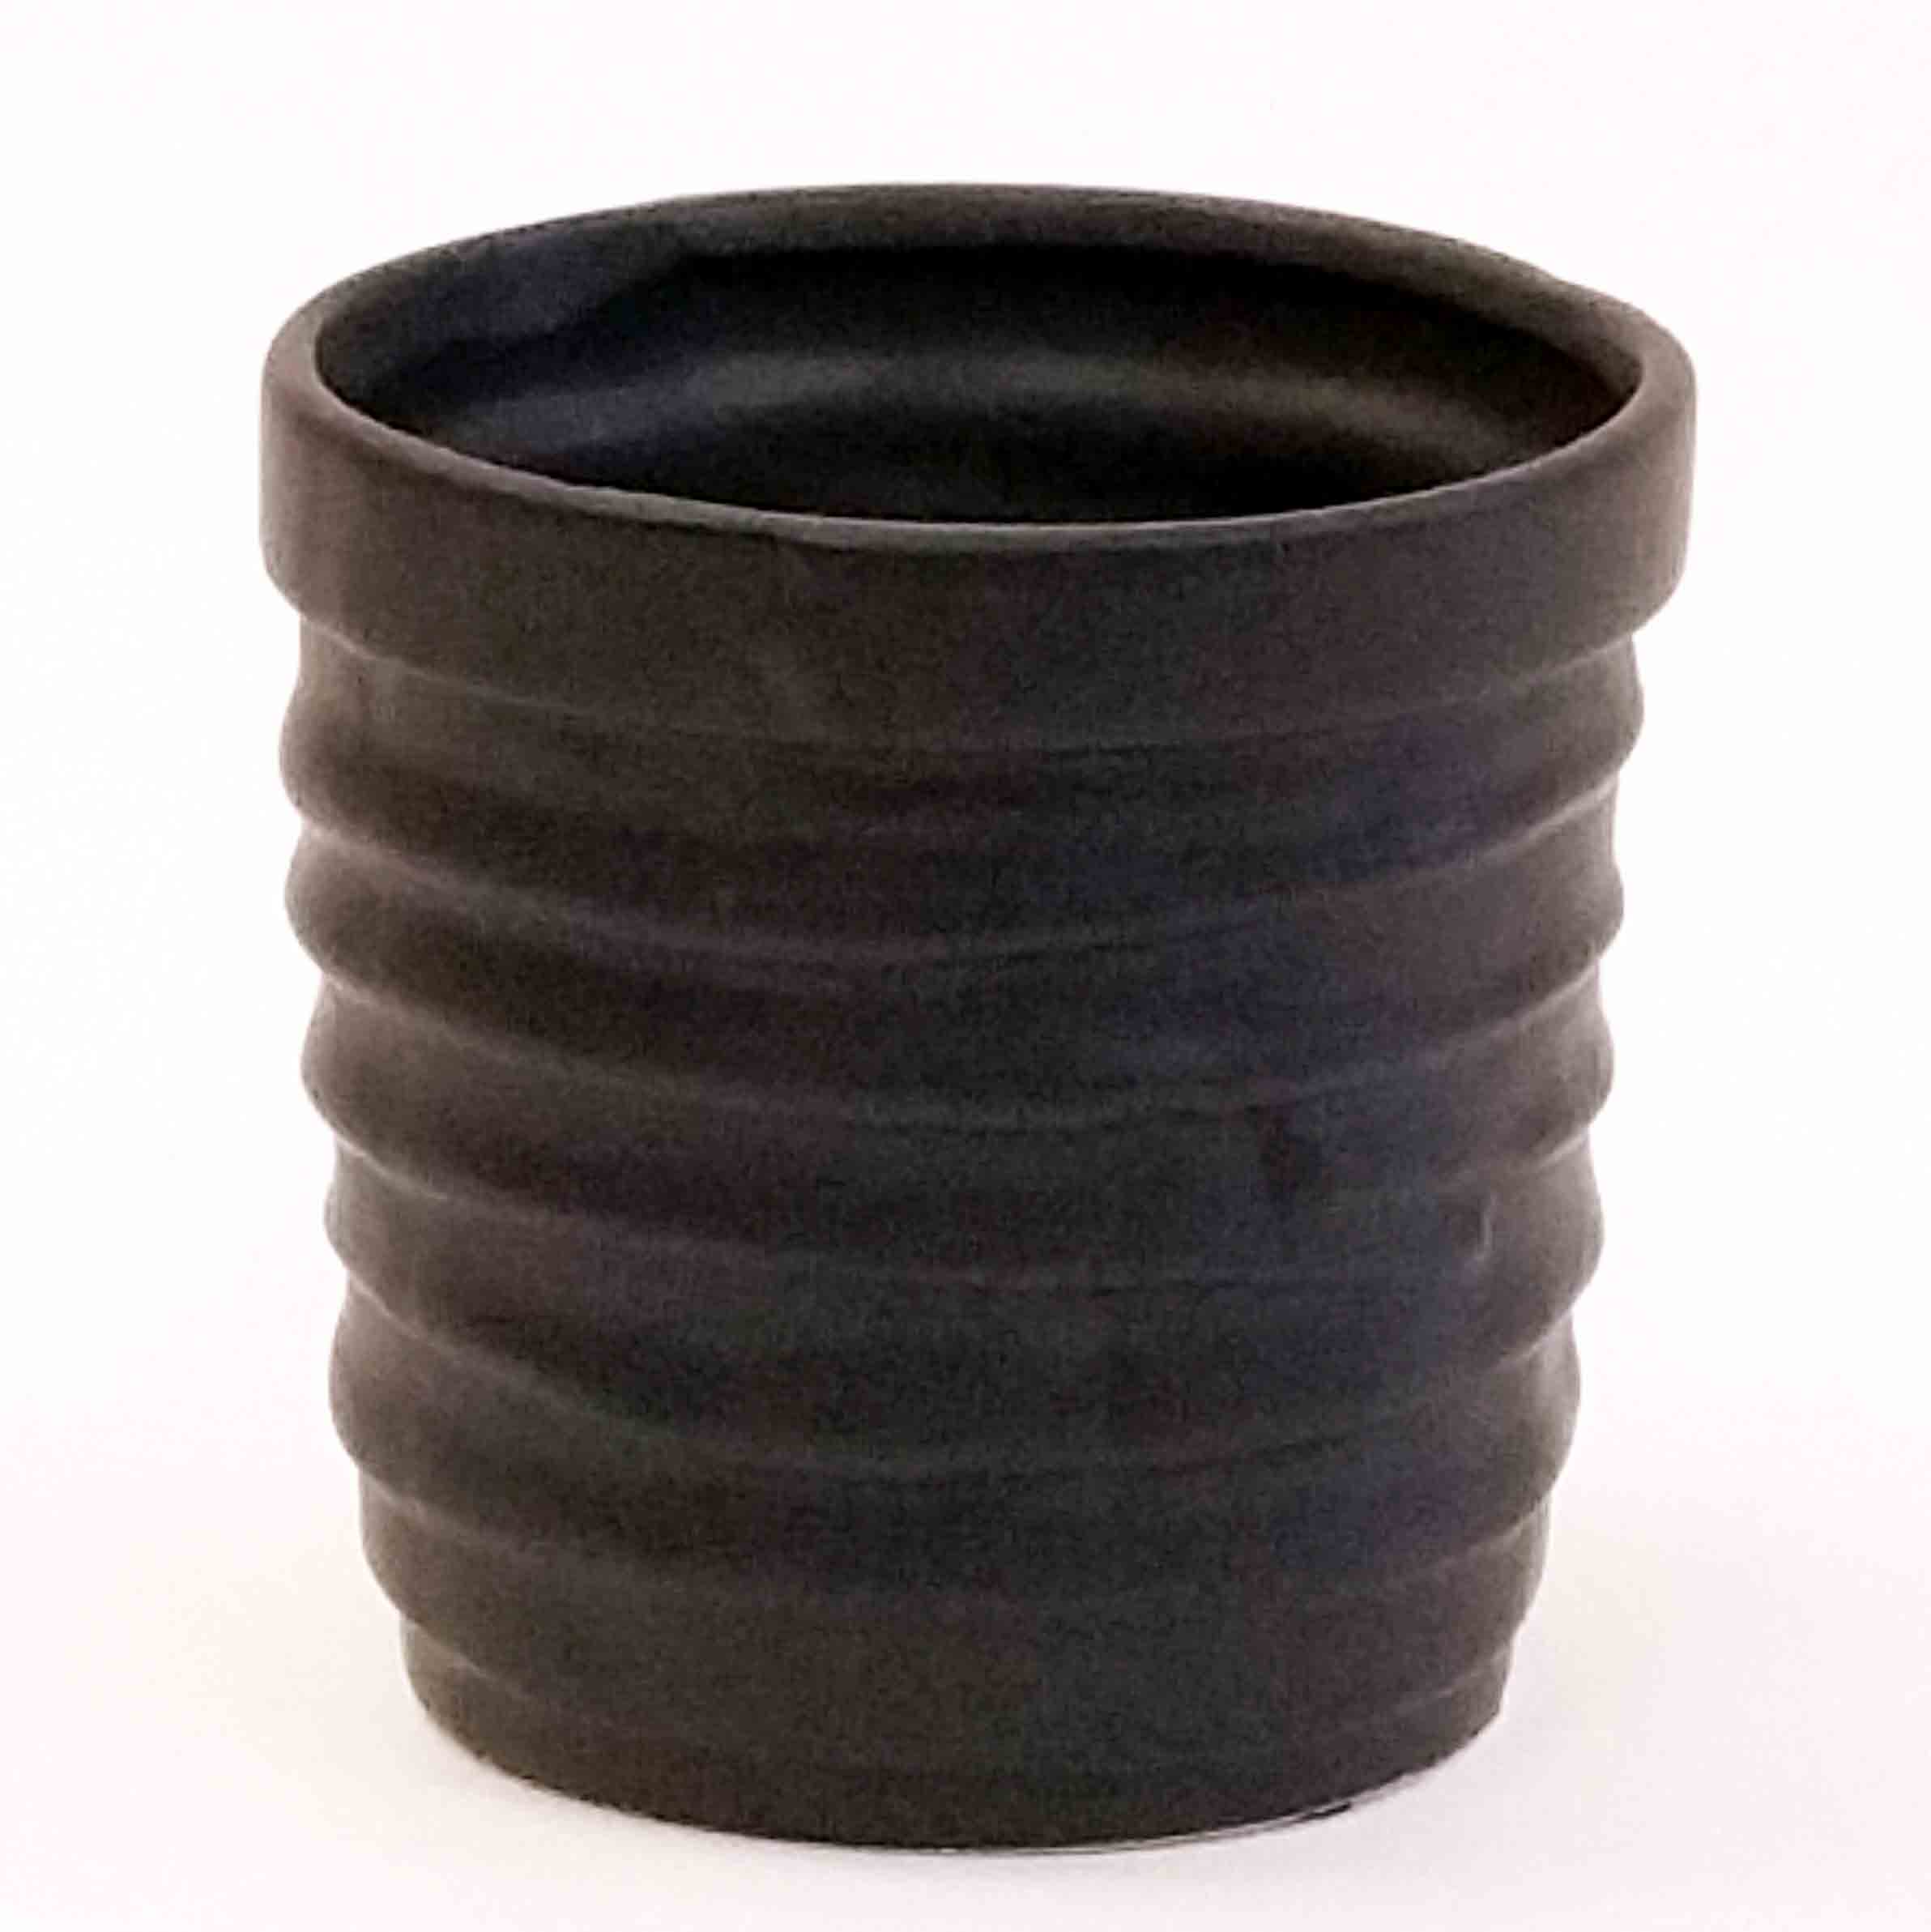 CC60 - 4.25" Ceramic Orchid Pot - 4.65 ea, 4.35/12